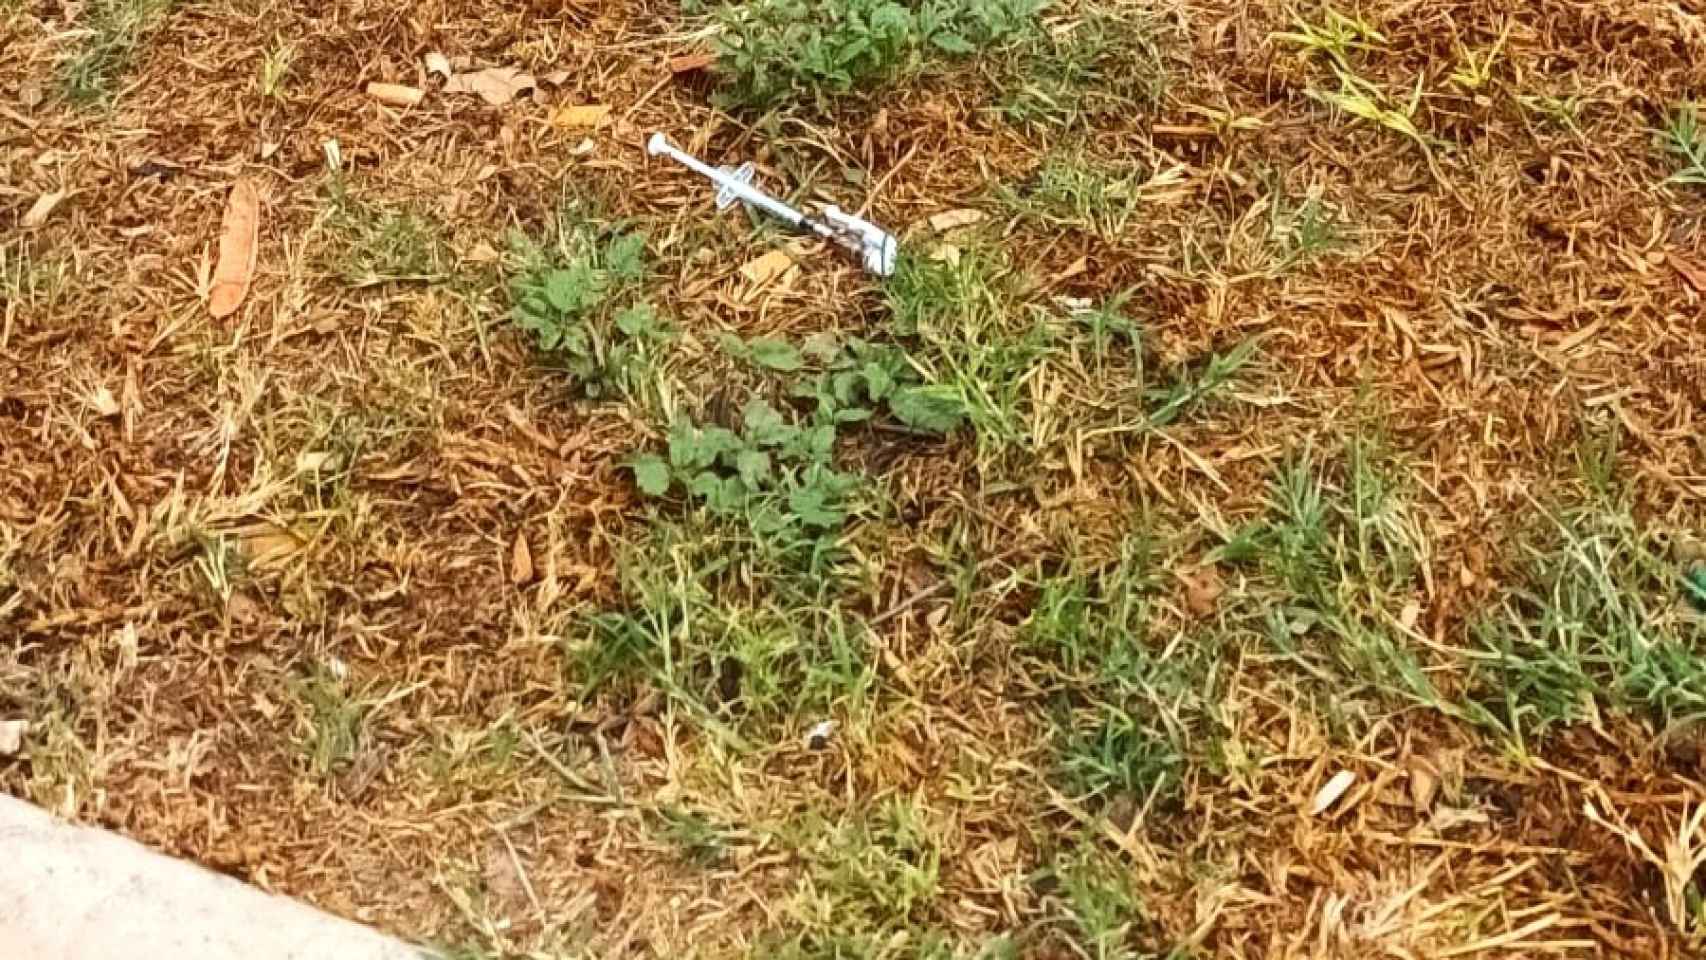 La asociación de vecinos denuncia el consumo de heroína en las calles de Colonia Santa Isabel.